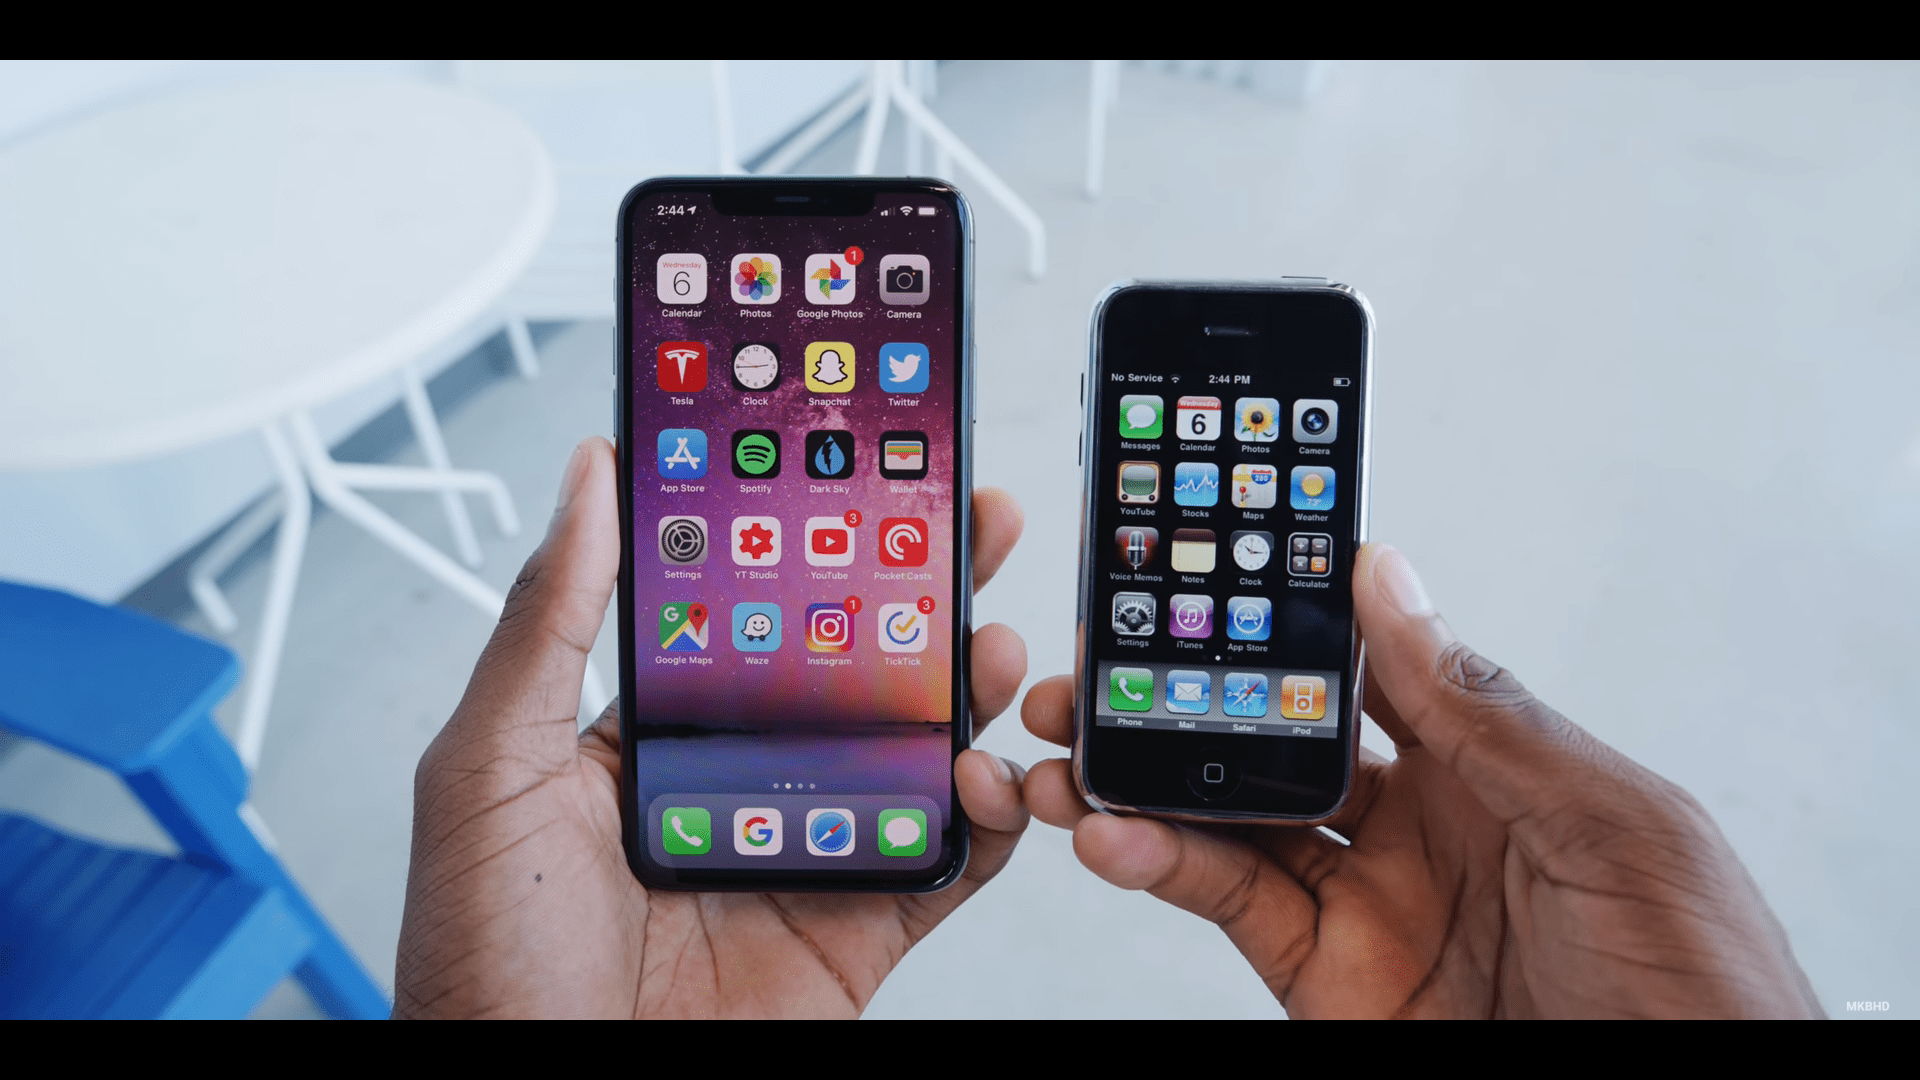 So sánh iPhone 11 Pro và iPhone 1: Nhiều thay đổi và phát triển, nhưng vẫn có thứ trường tồn và làm nên thương hiệu “iPhone”